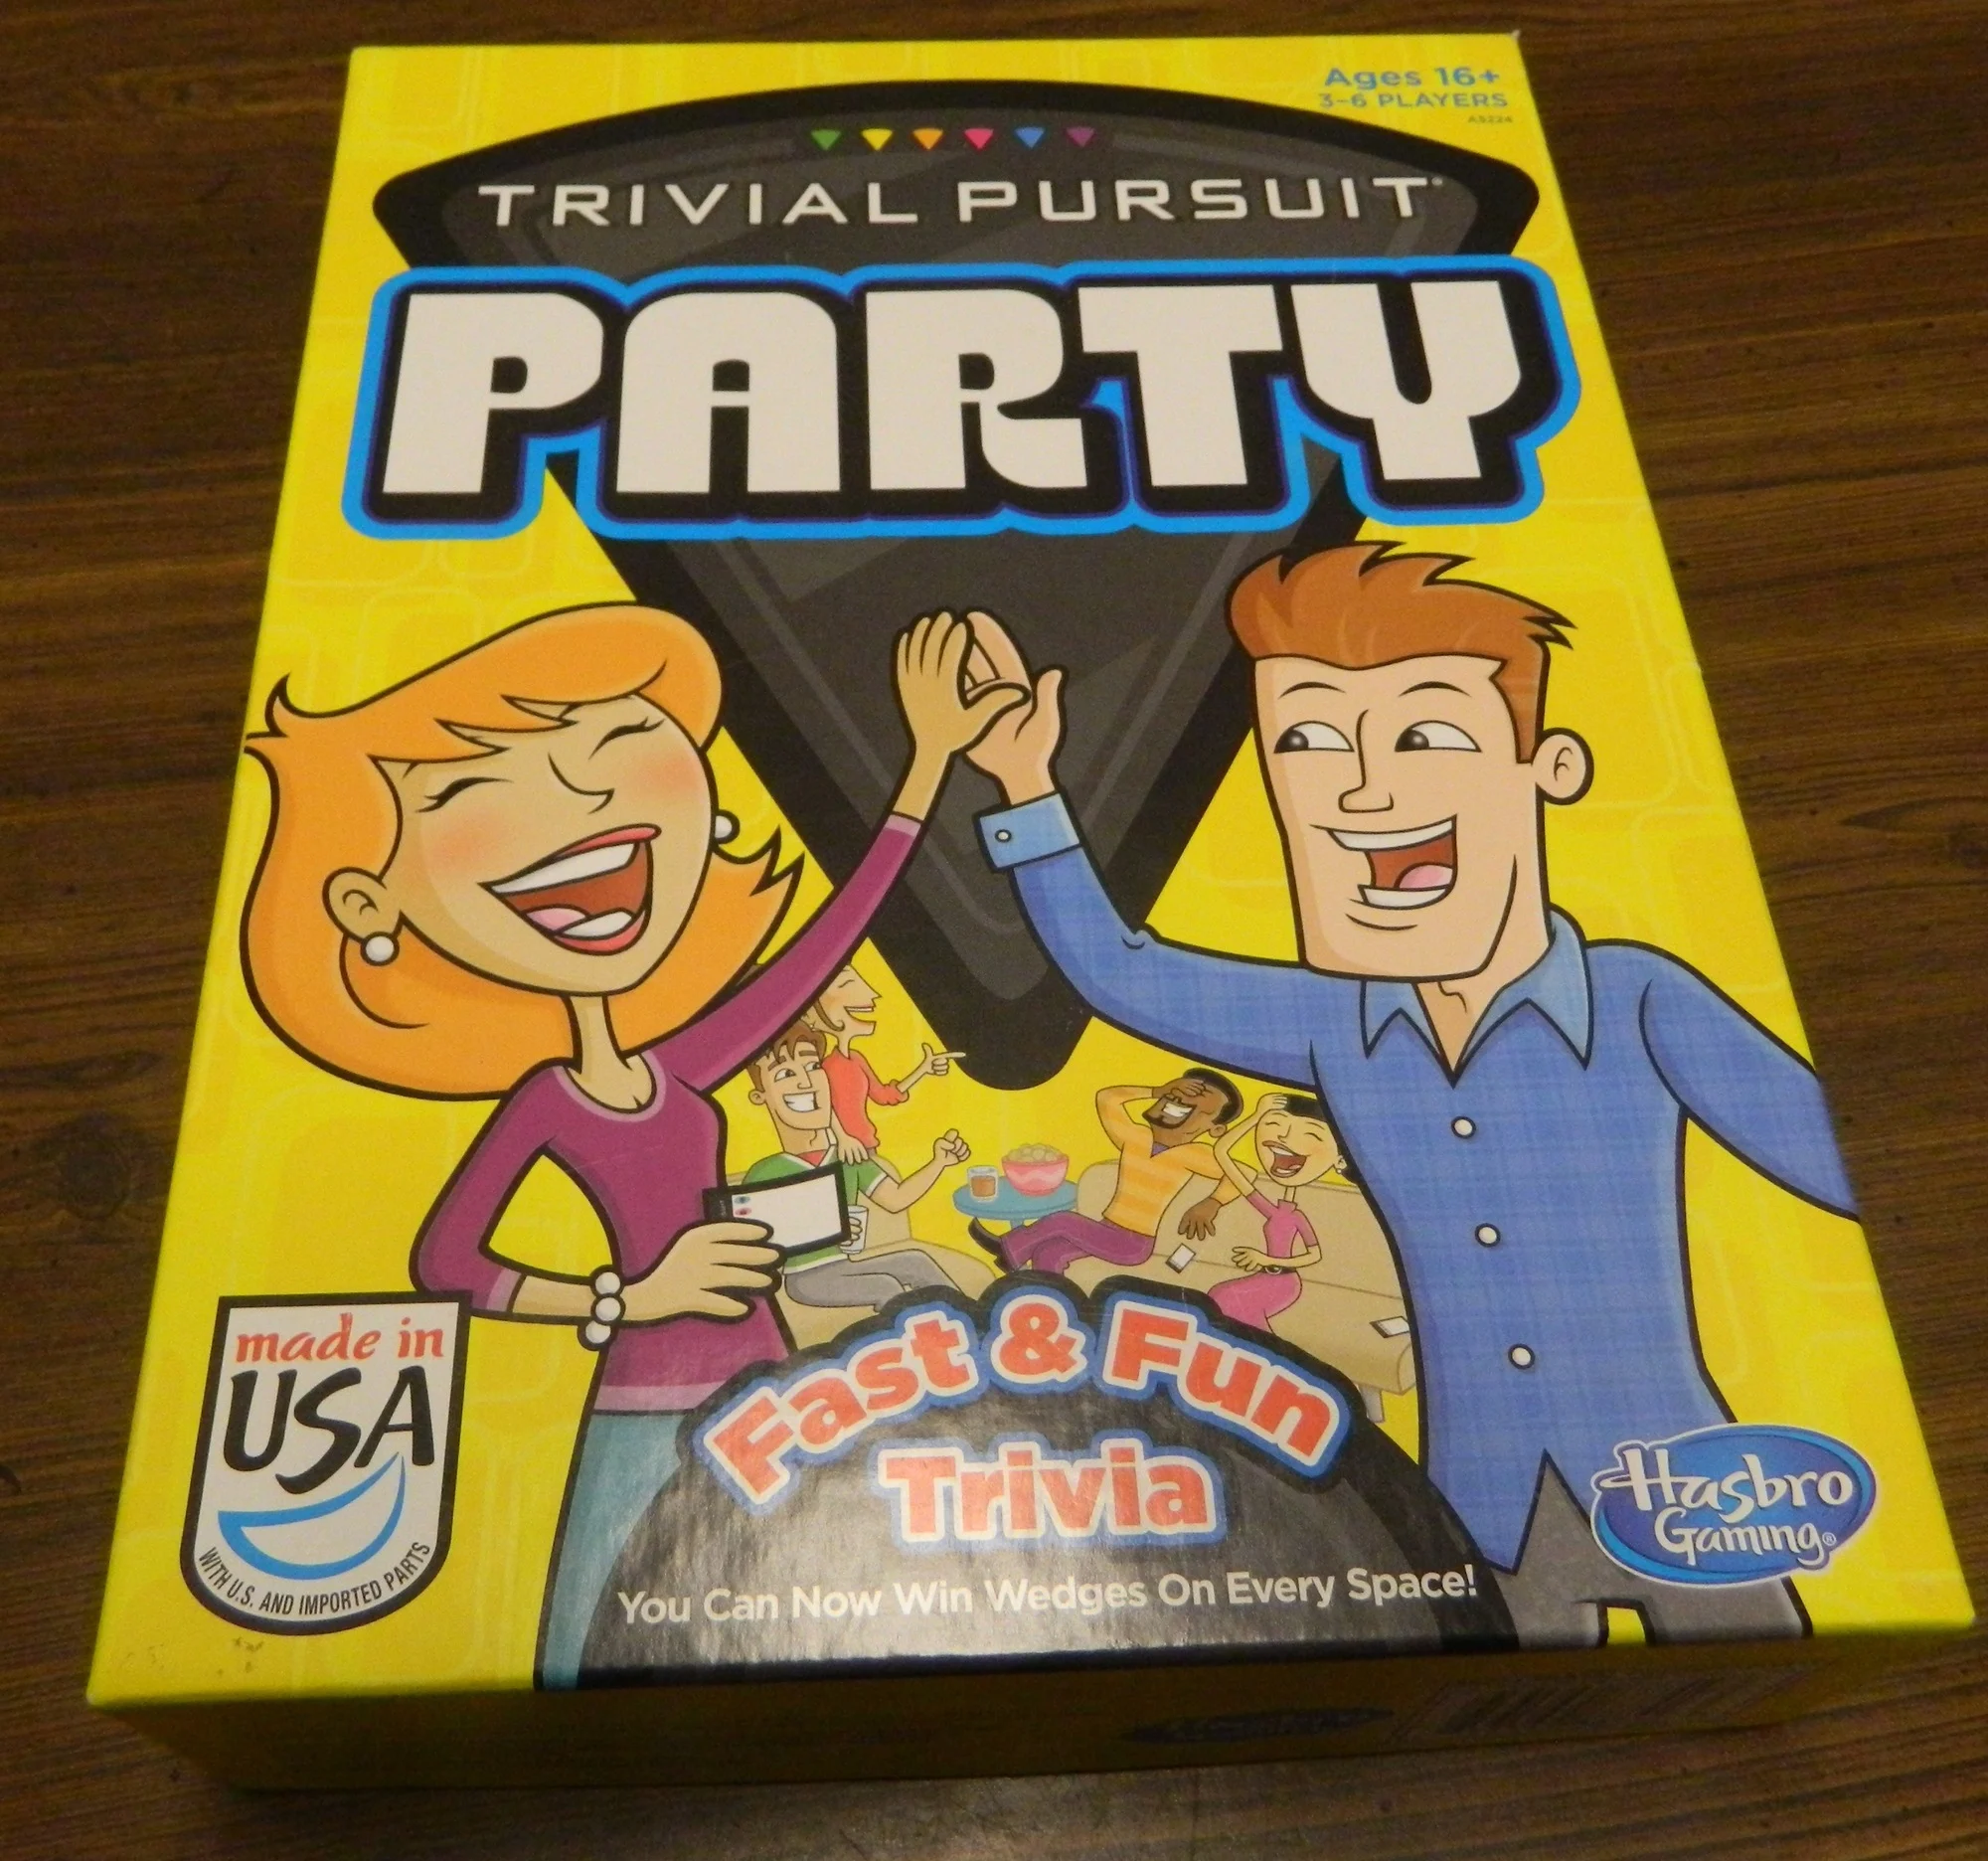 Trivial Pursuit Party Box